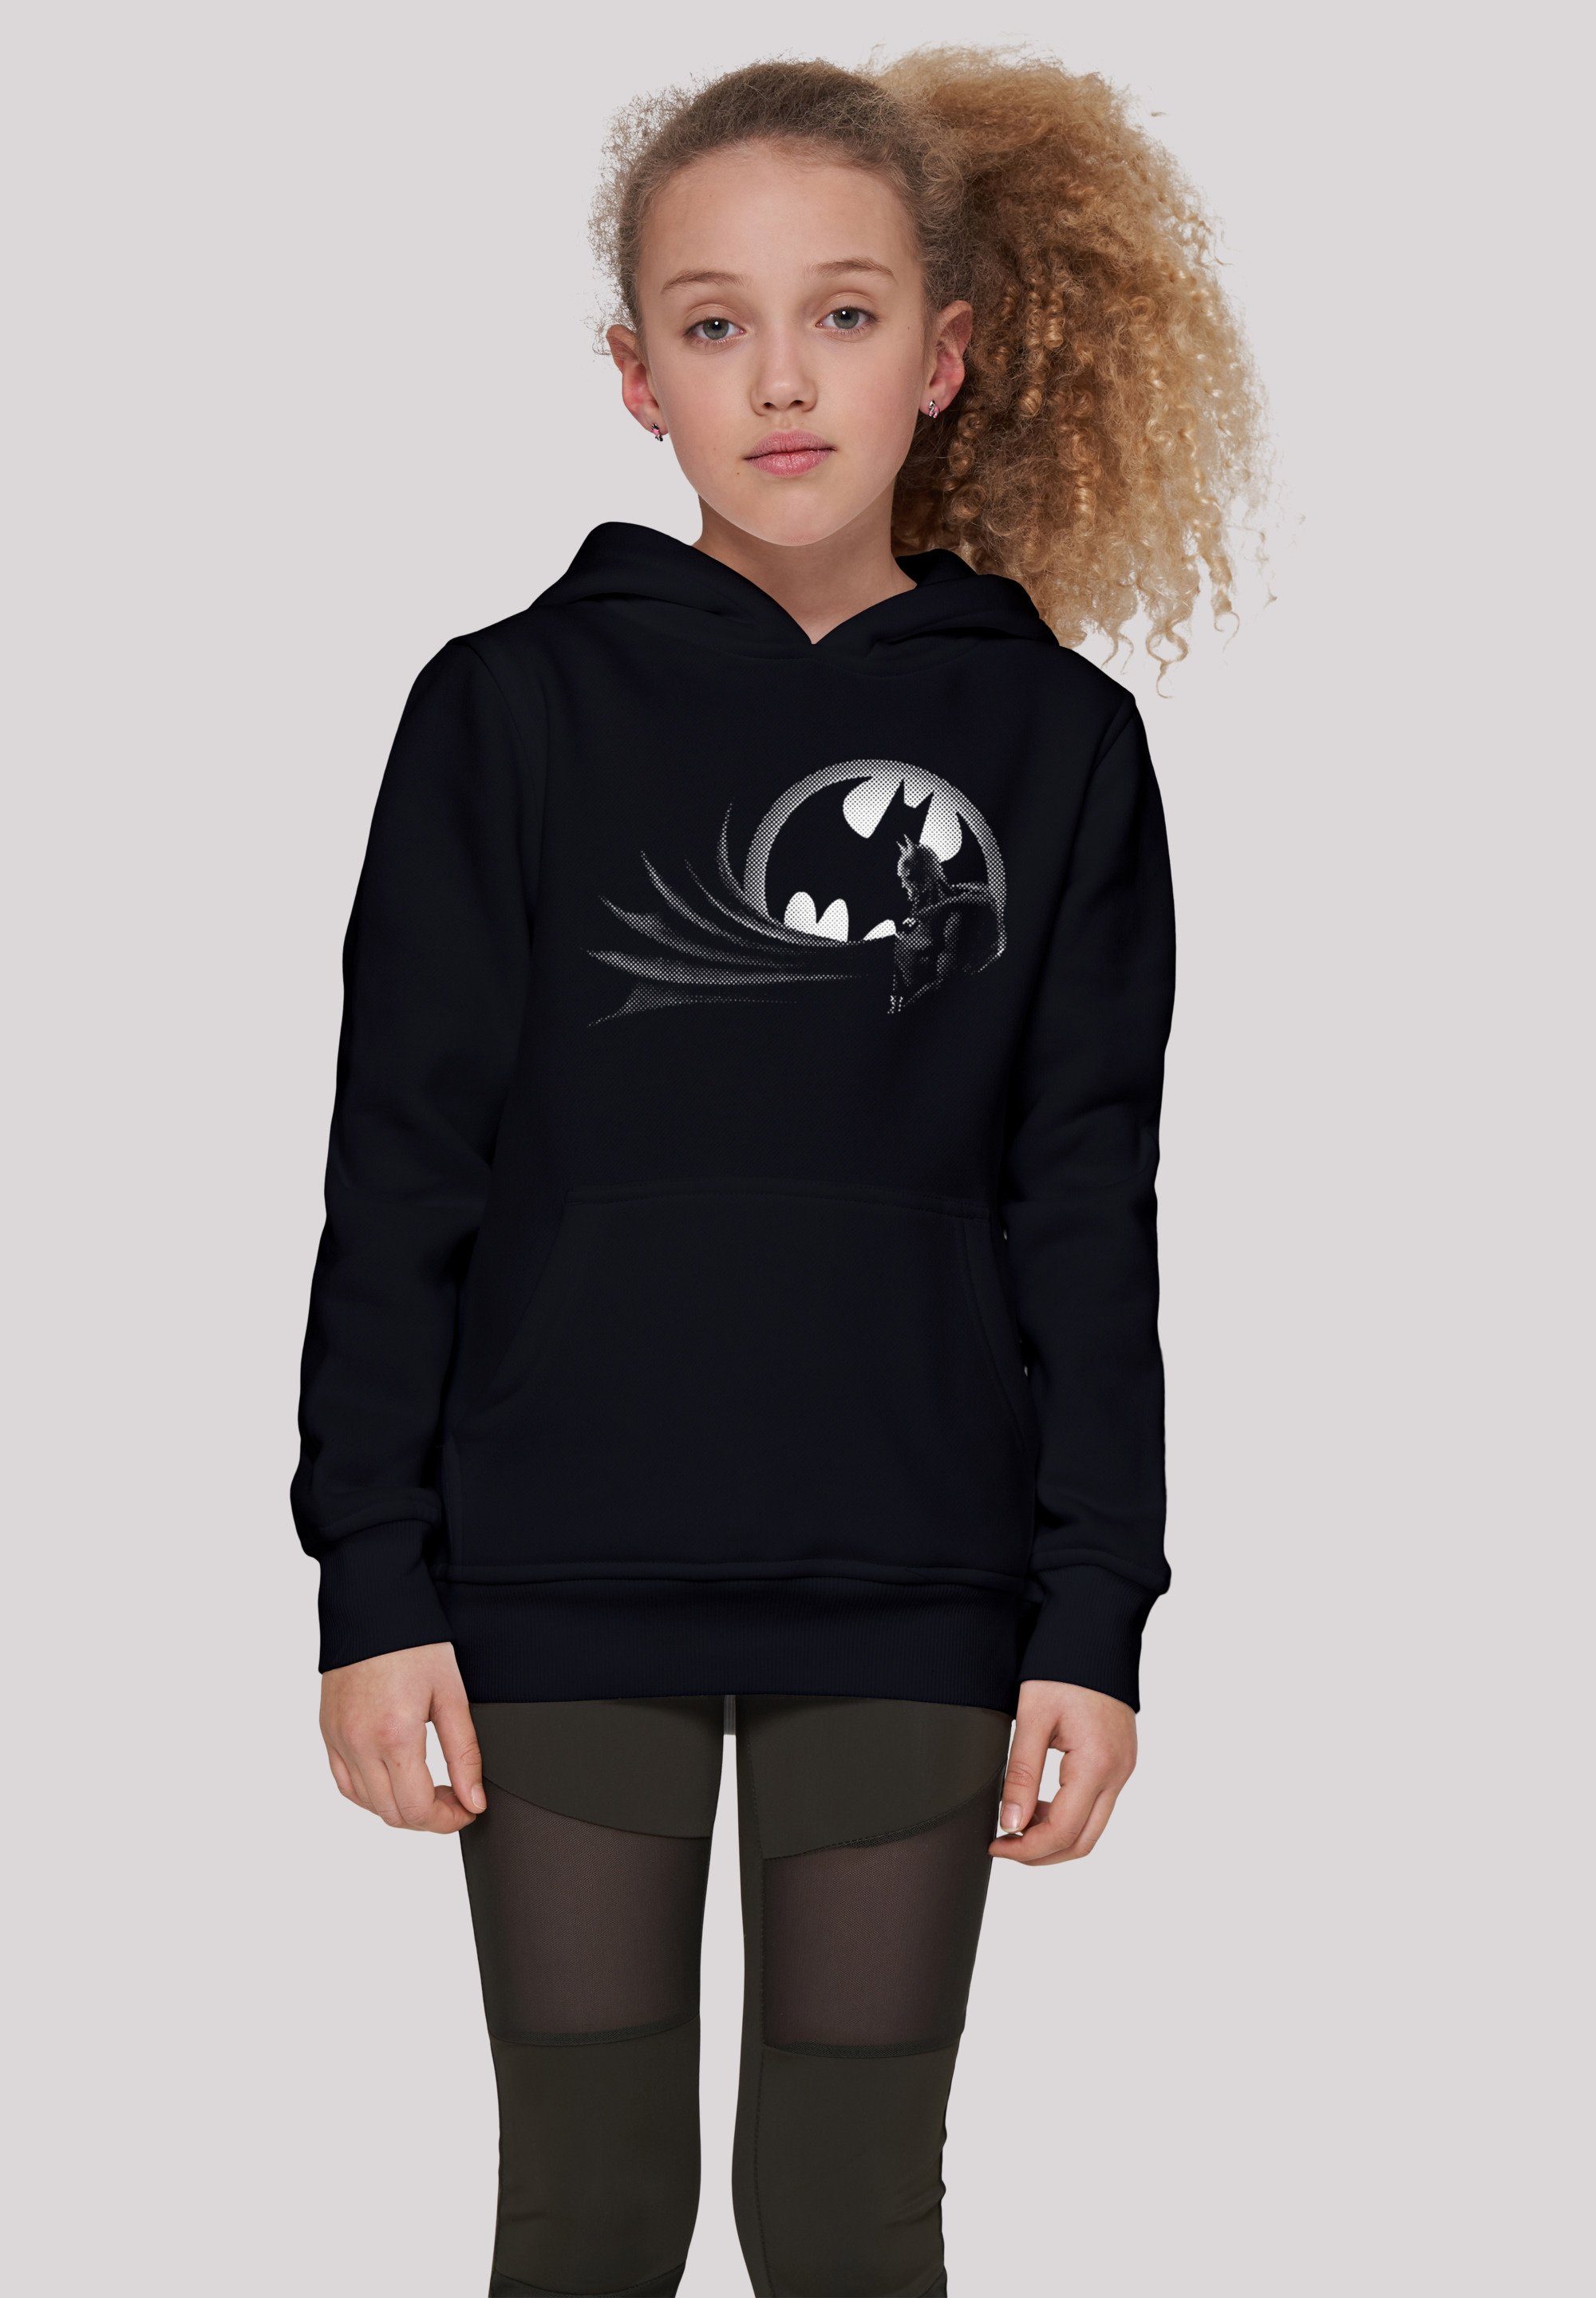 F4NT4STIC Sweatshirt DC Comics Batman Spot Logo Unisex Kinder,Premium Merch,Jungen,Mädchen,Bedruckt